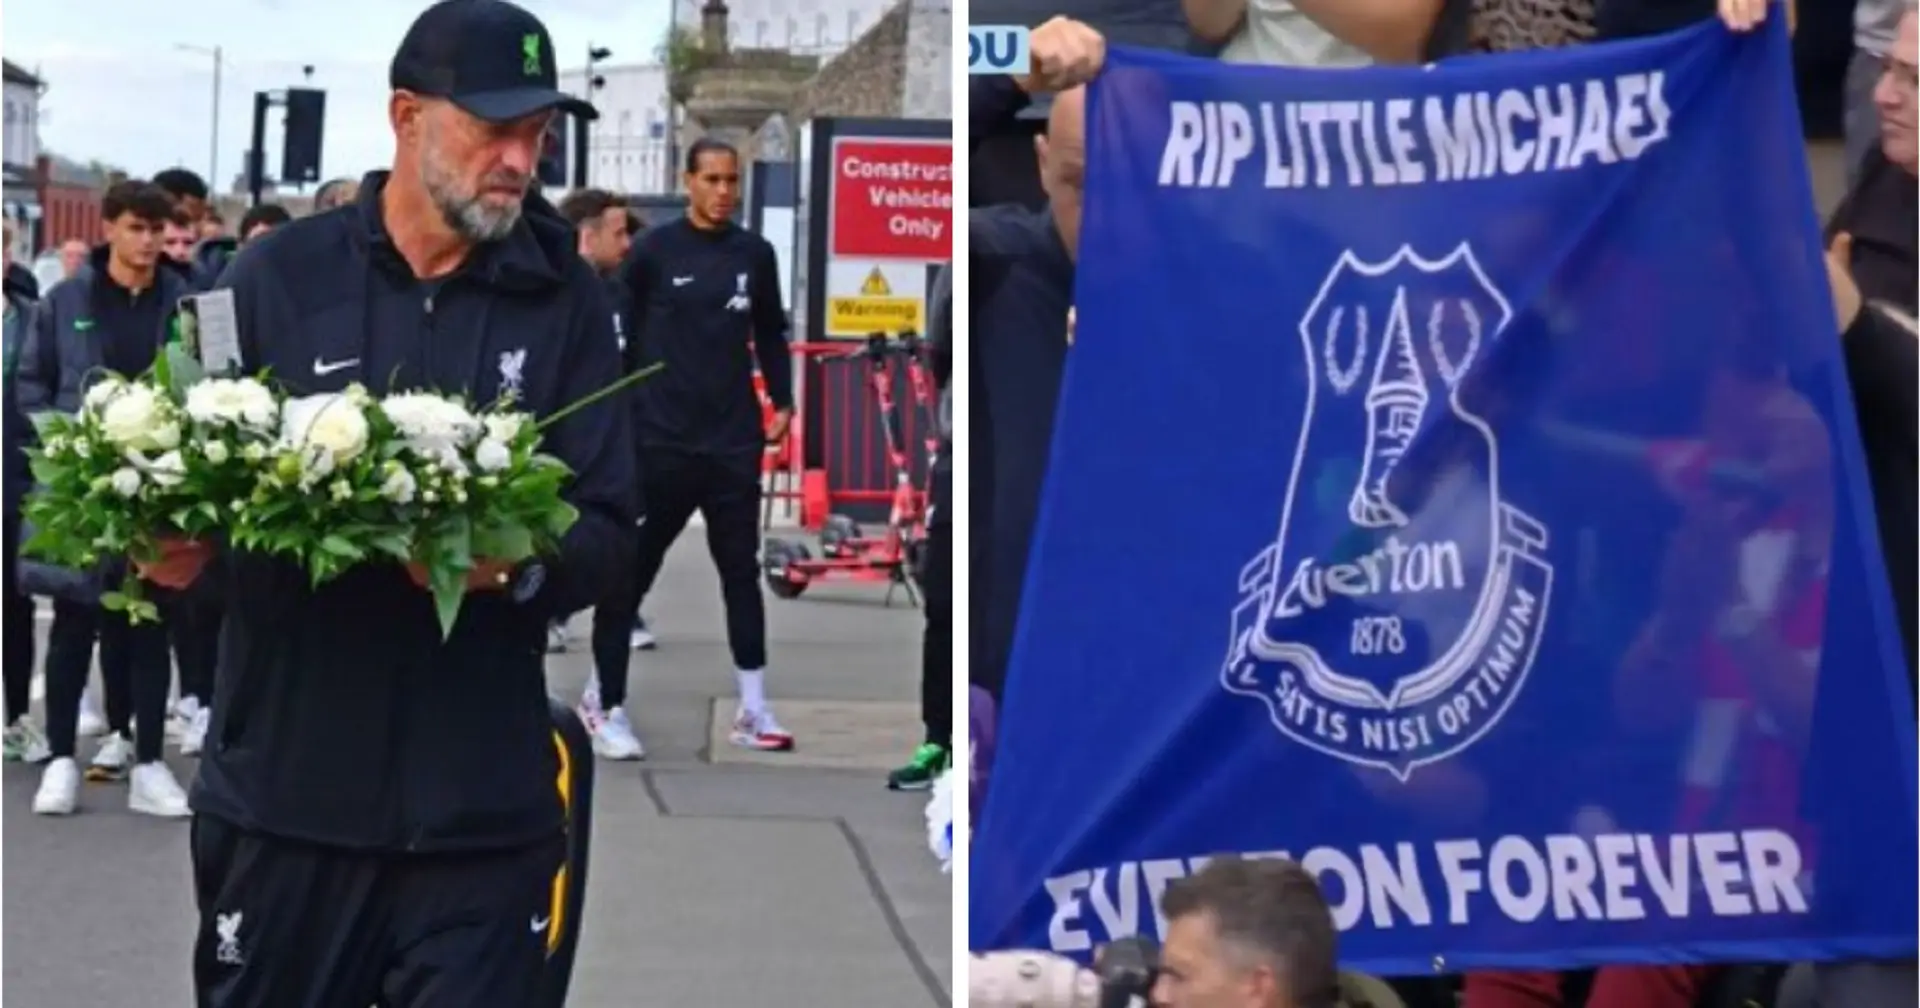 Klopp und Liverpool haben das Gedenken an einen verstorbenen Everton-Fan gewürdigt - während des Spiels an der Anfield wurde ihm zu Ehren ein Banner getragen 